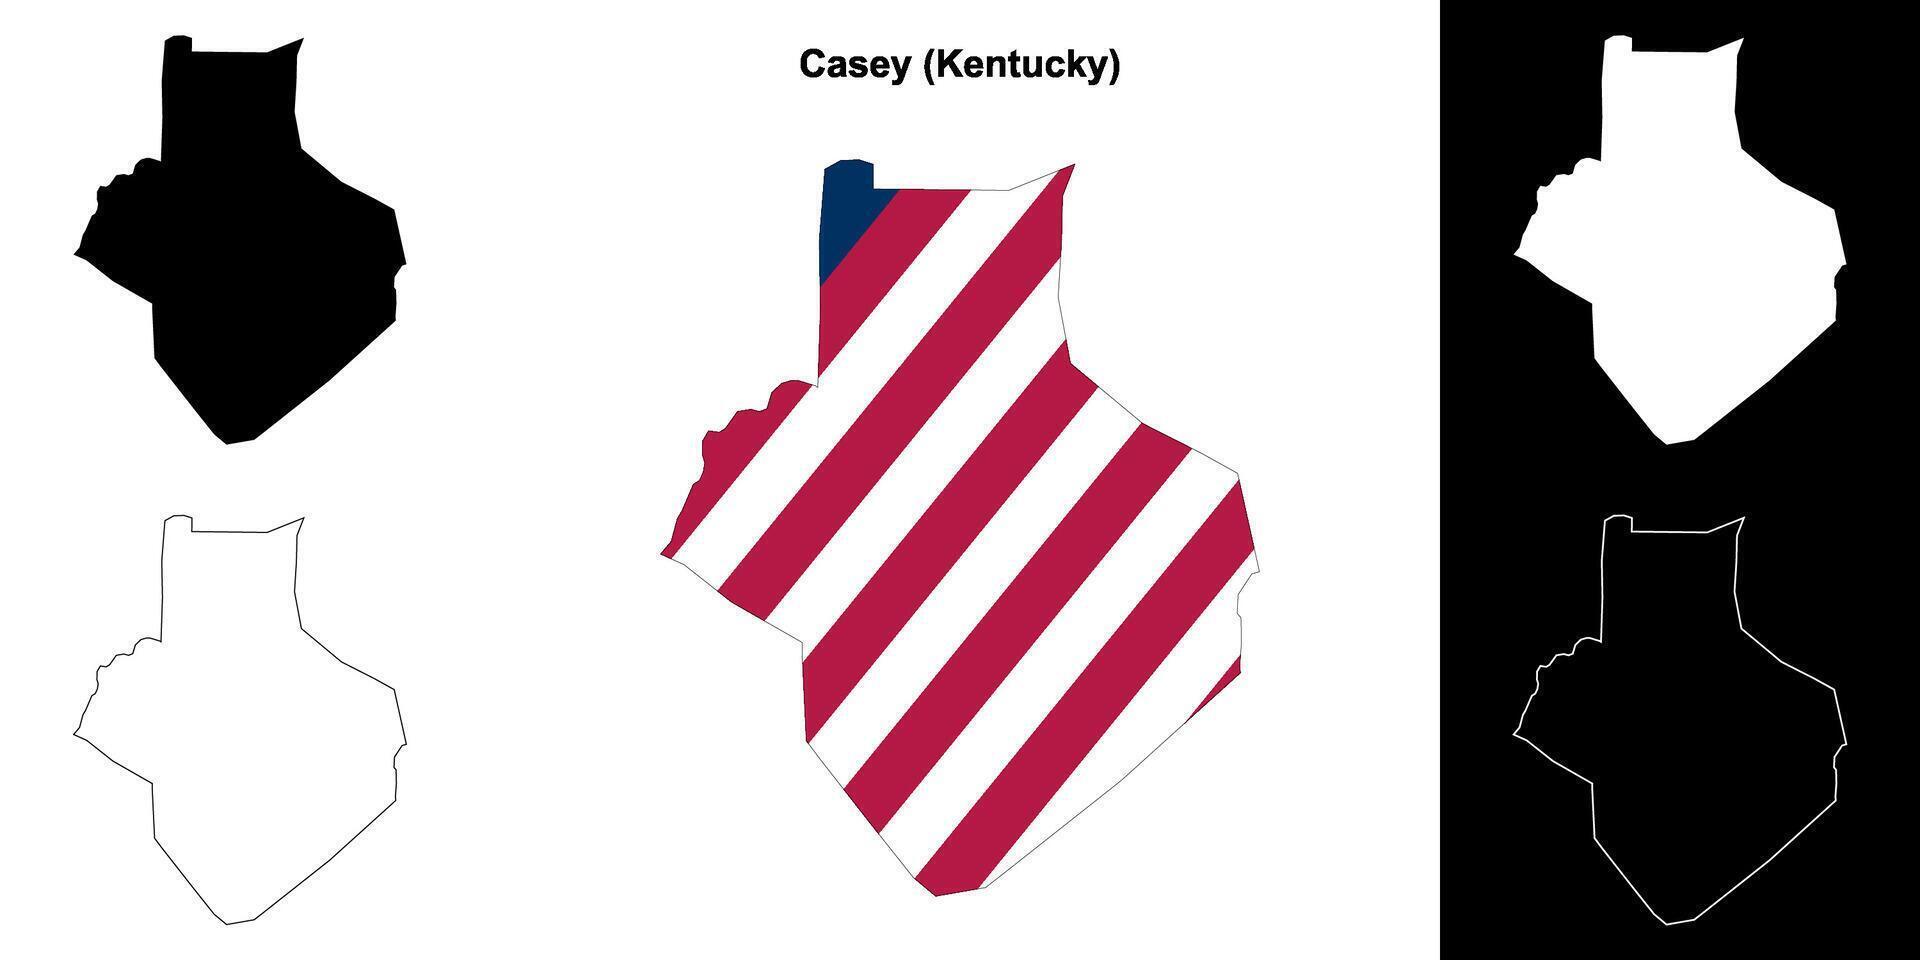 casey condado, Kentucky contorno mapa conjunto vector